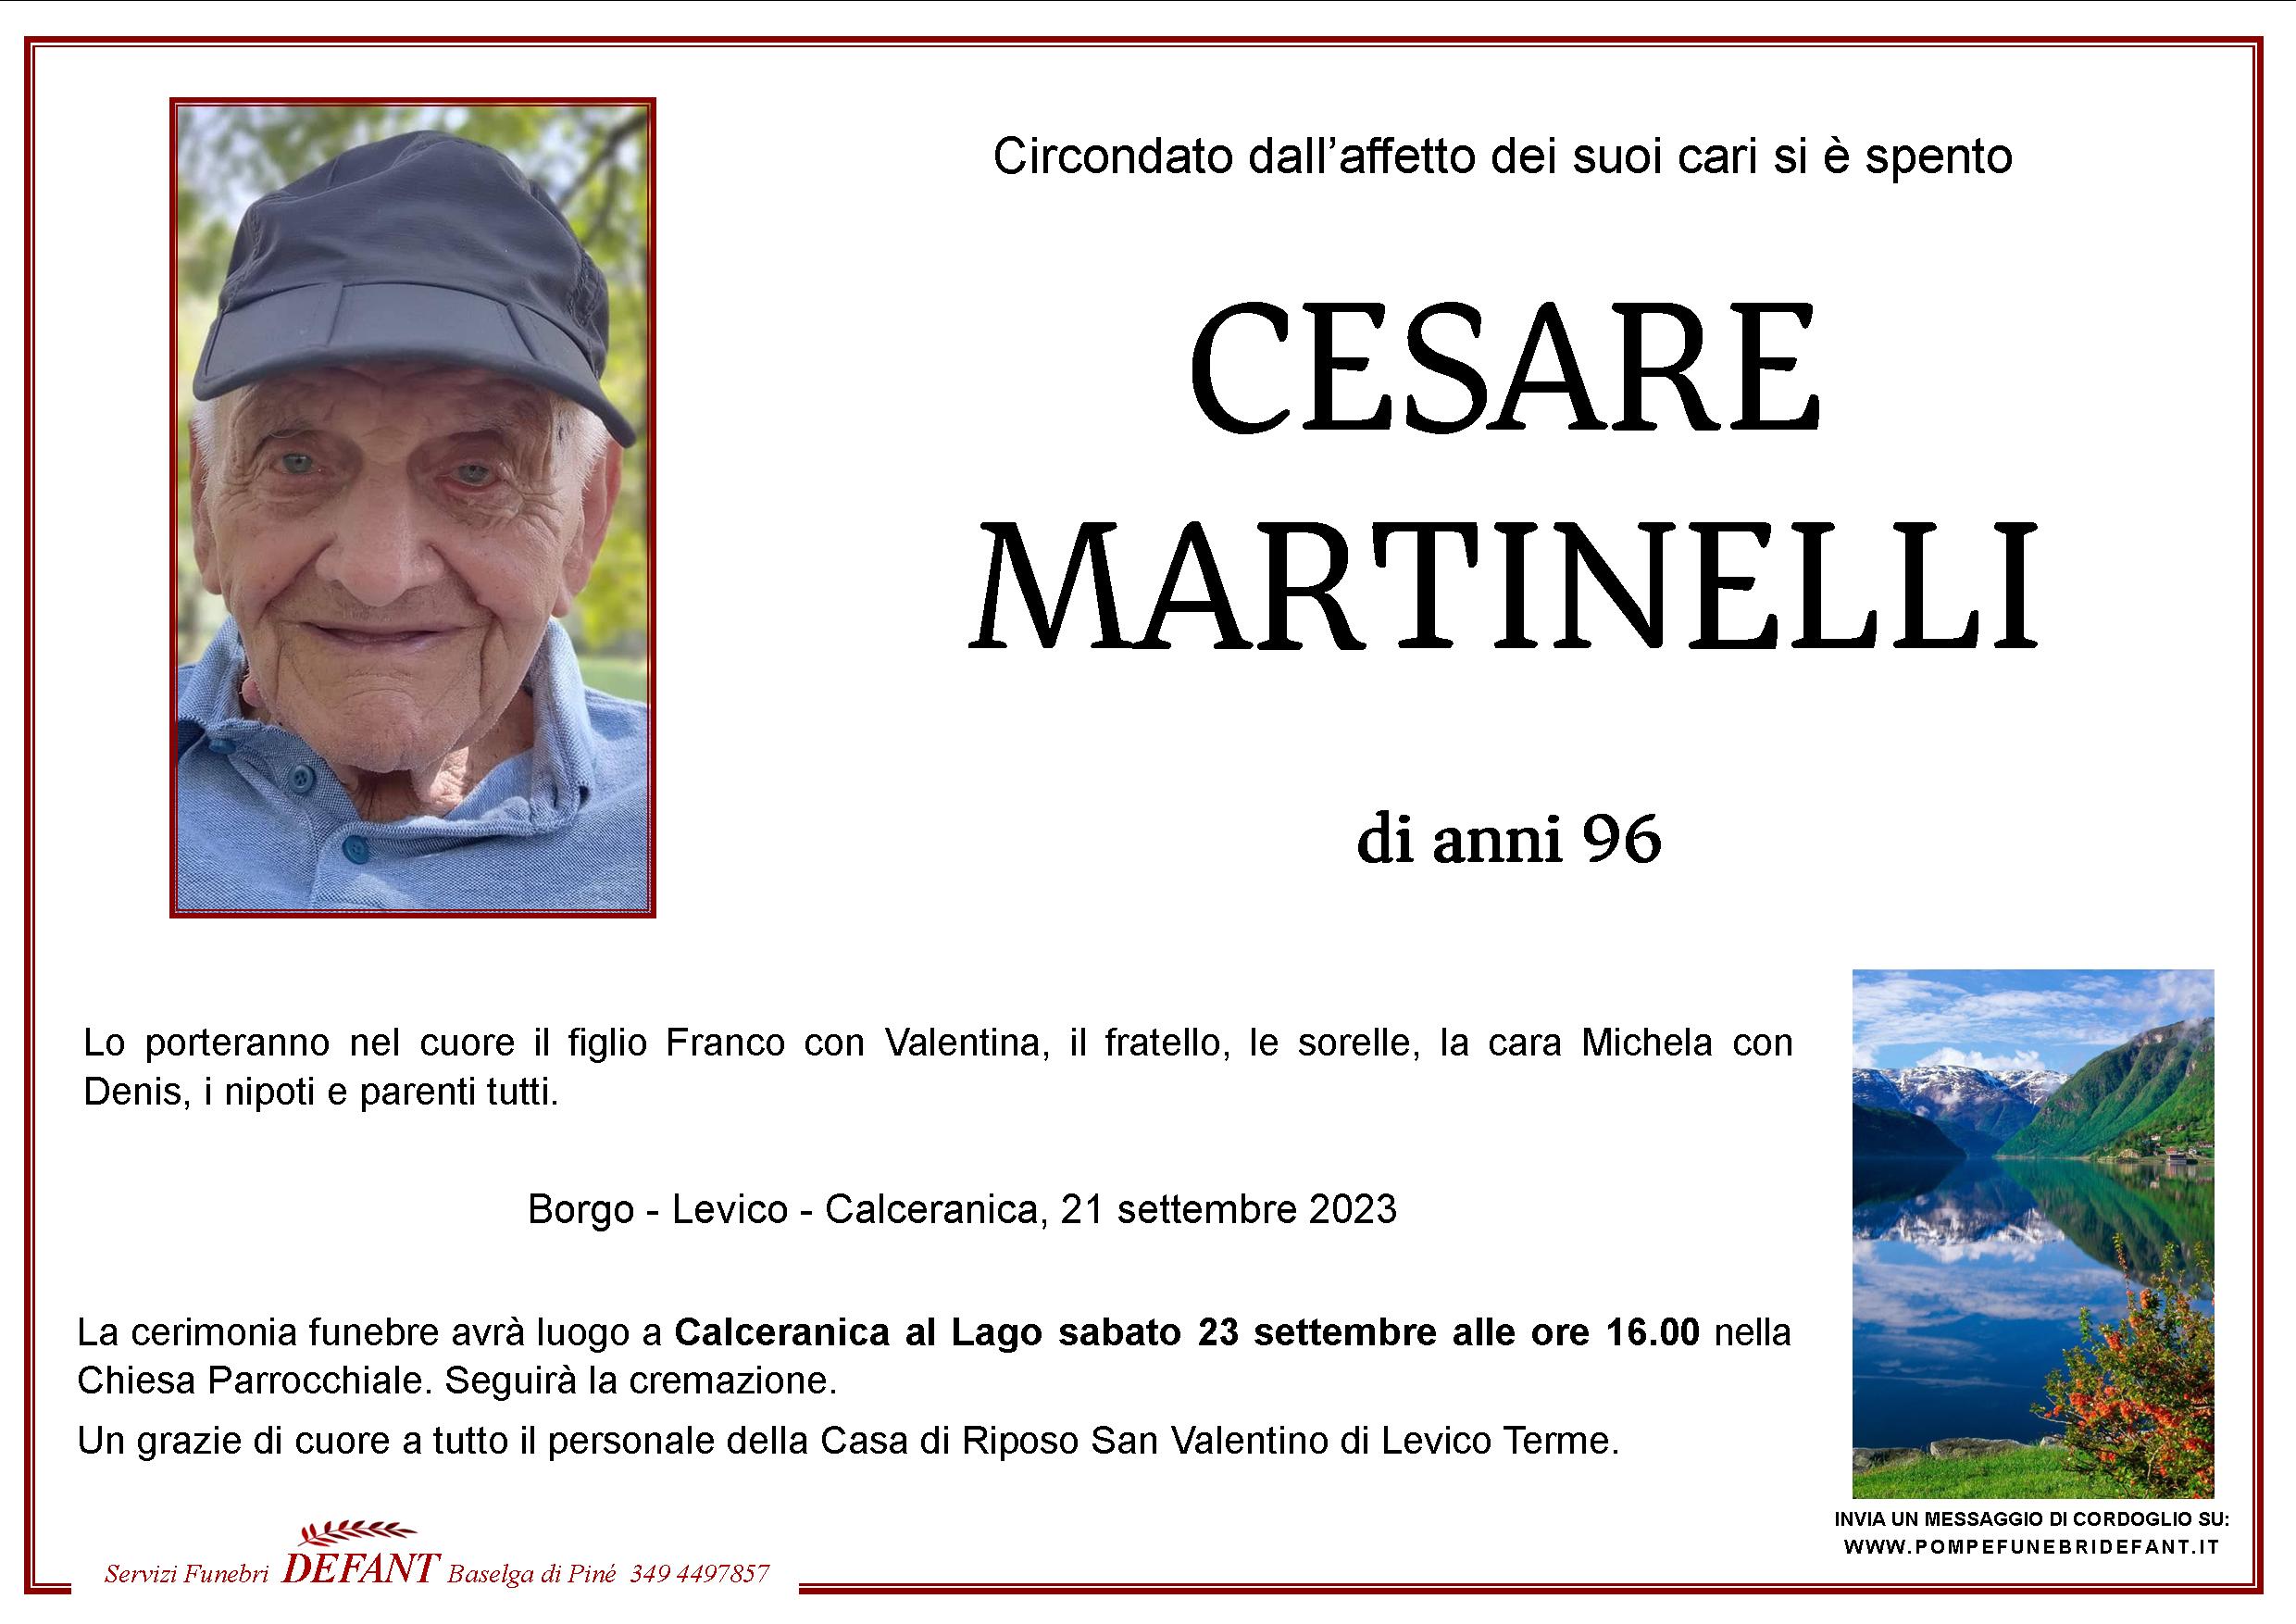 Cesare Martinelli